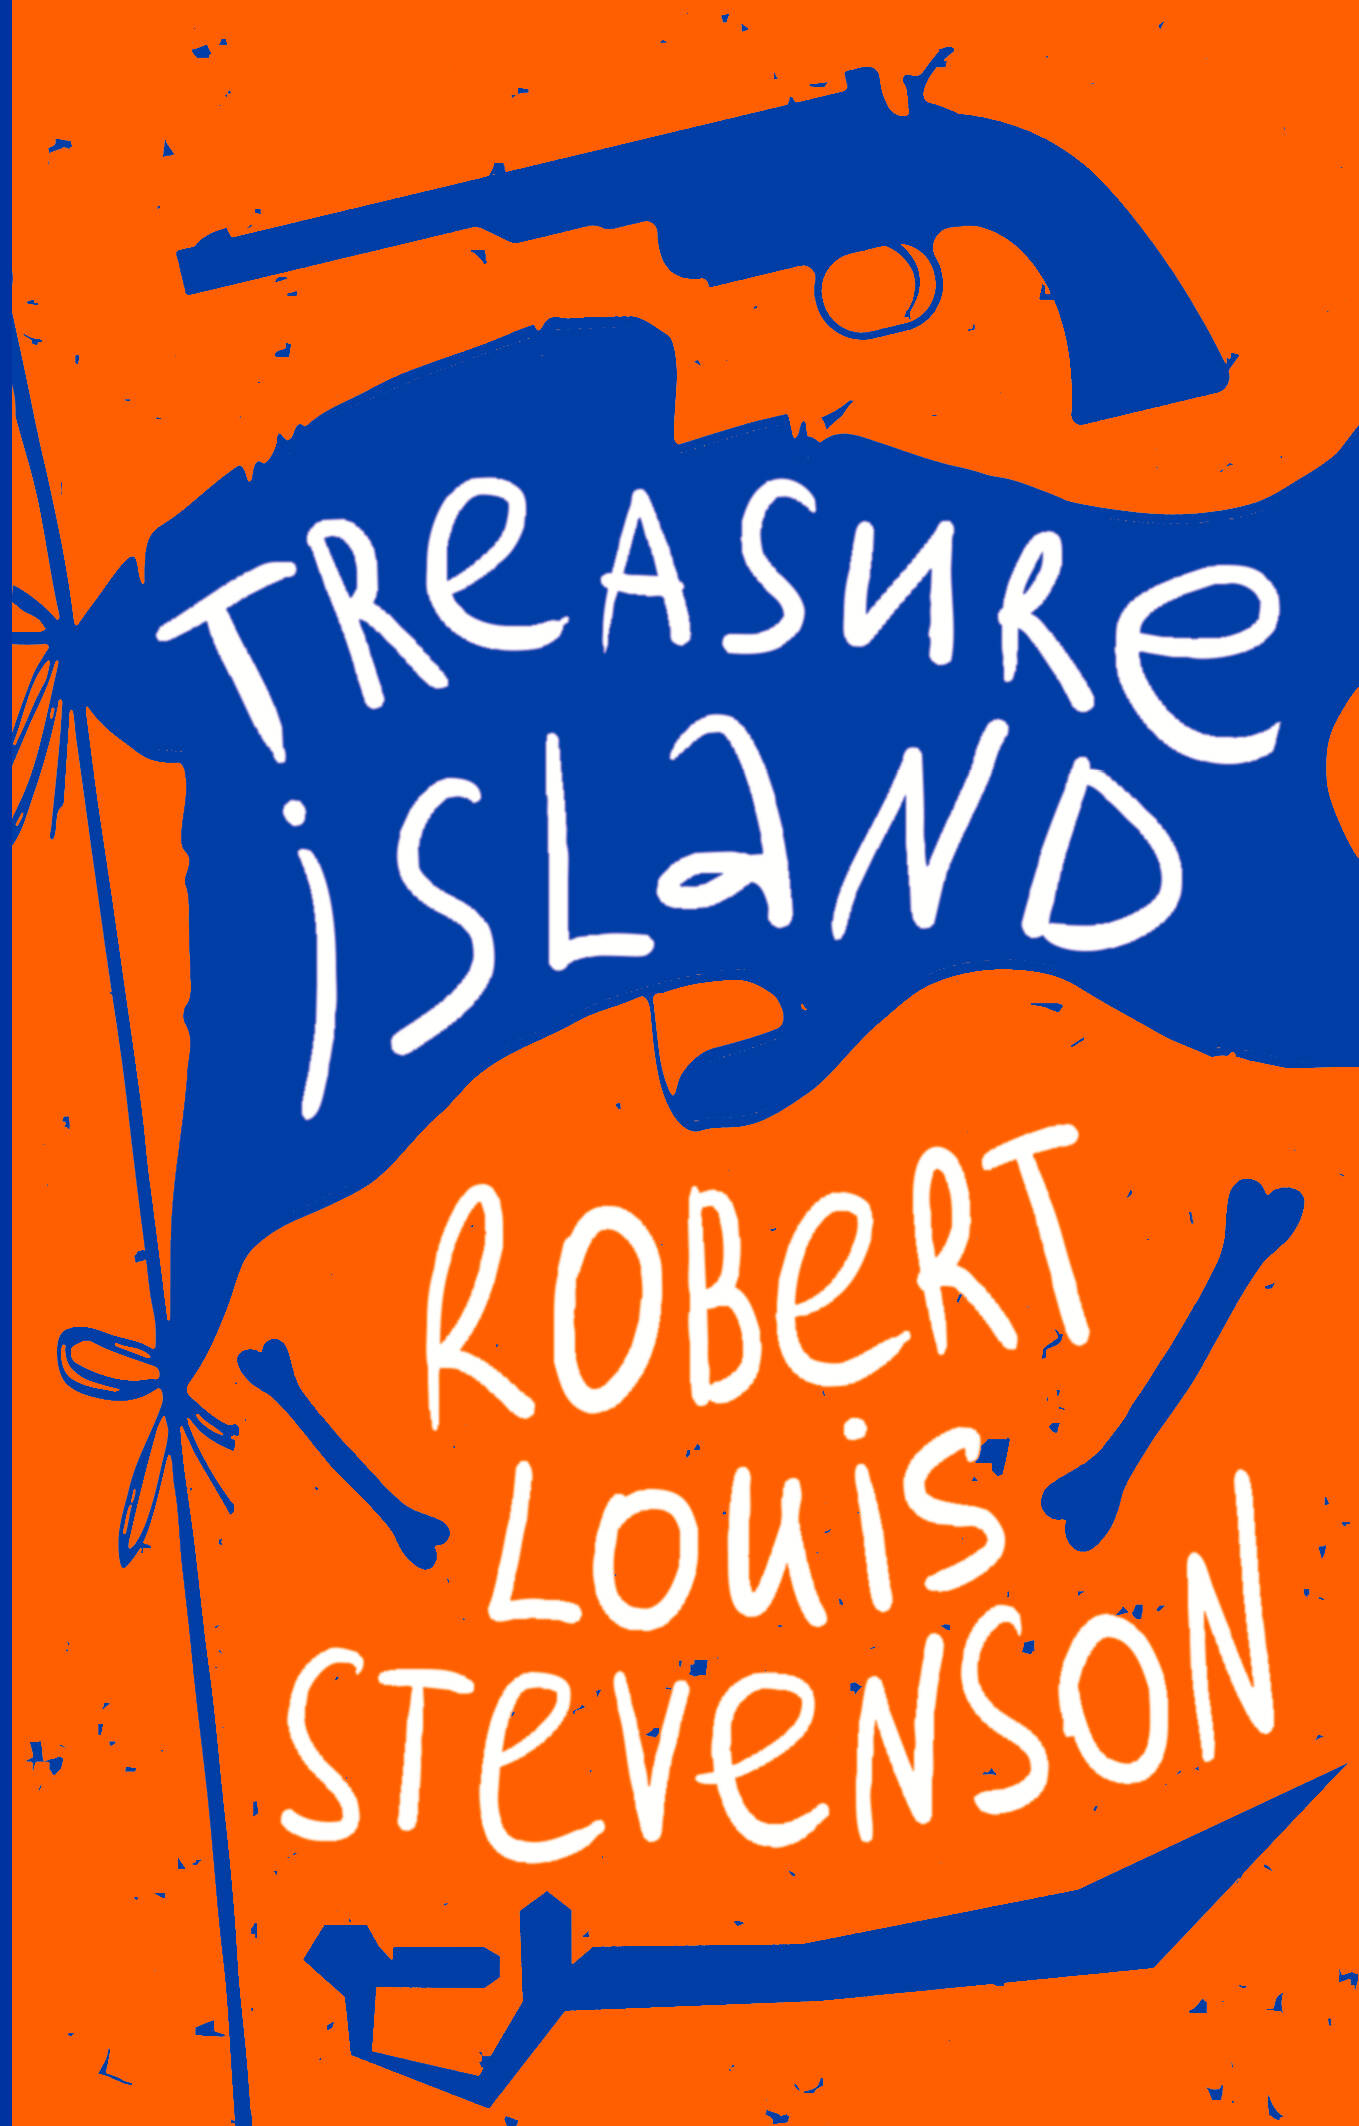 Стивенсон Роберт Льюис Balfour Treasure Island стивенсон роберт льюис остров сокровищ treasure island на английском языке